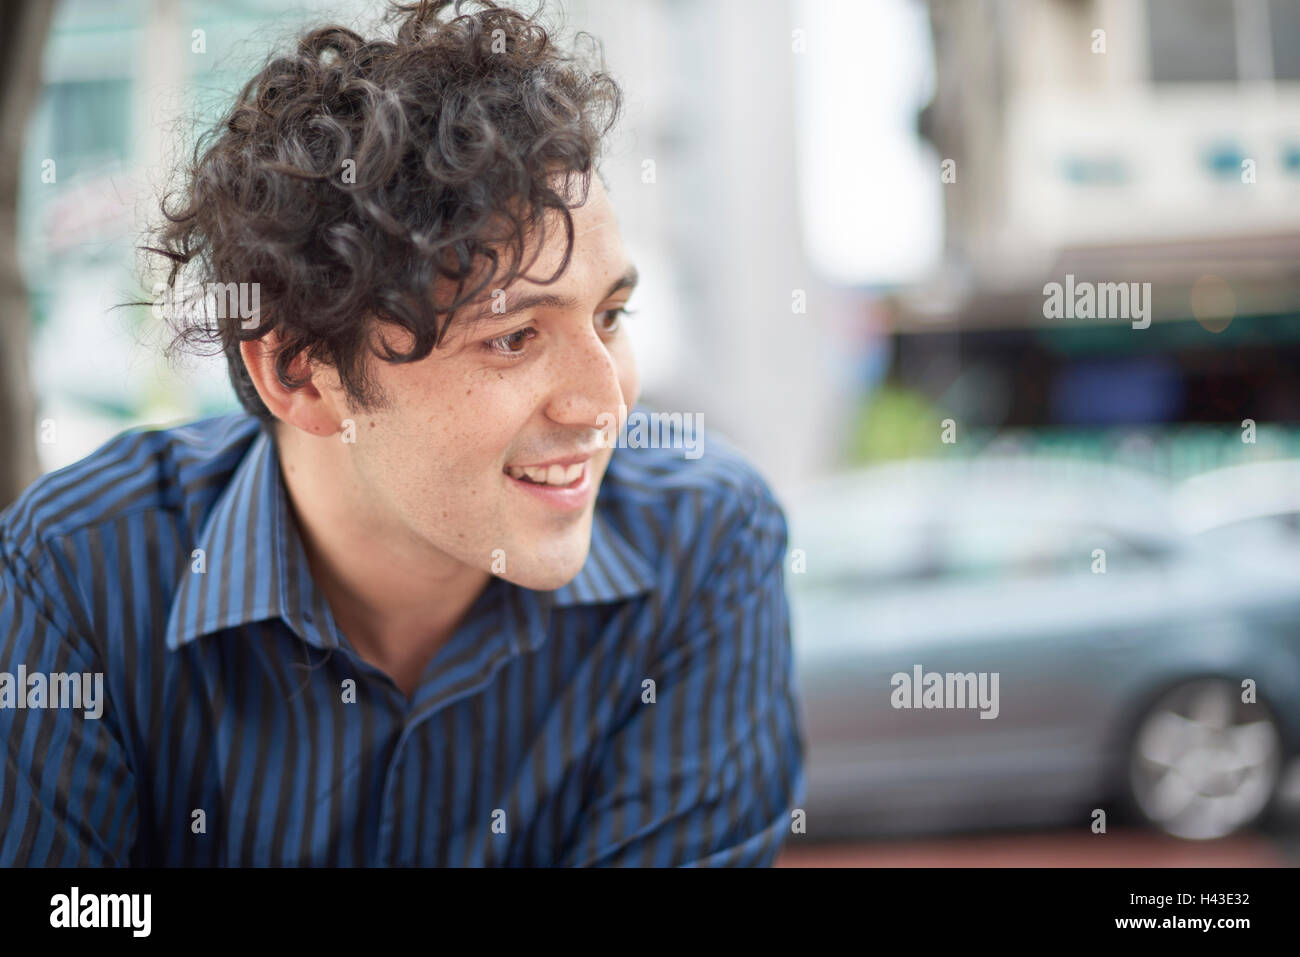 Smiling Hispanic man avec les cheveux bouclés Banque D'Images